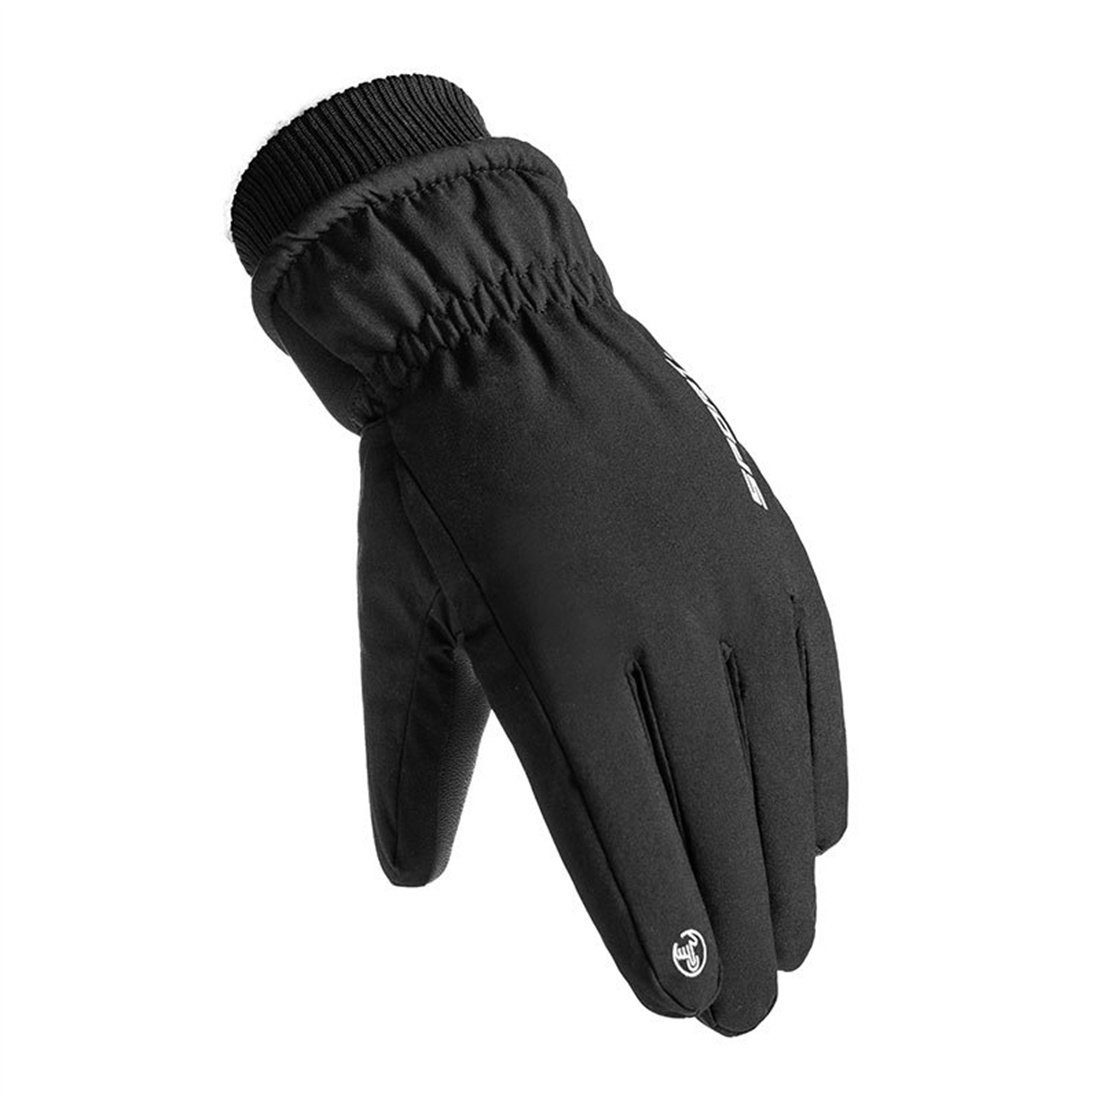 Grau DÖRÖY Skihandschuhe Handschuhe mitTouchscreen,unisex Winddichte Winter-Skihandschuhe,warme